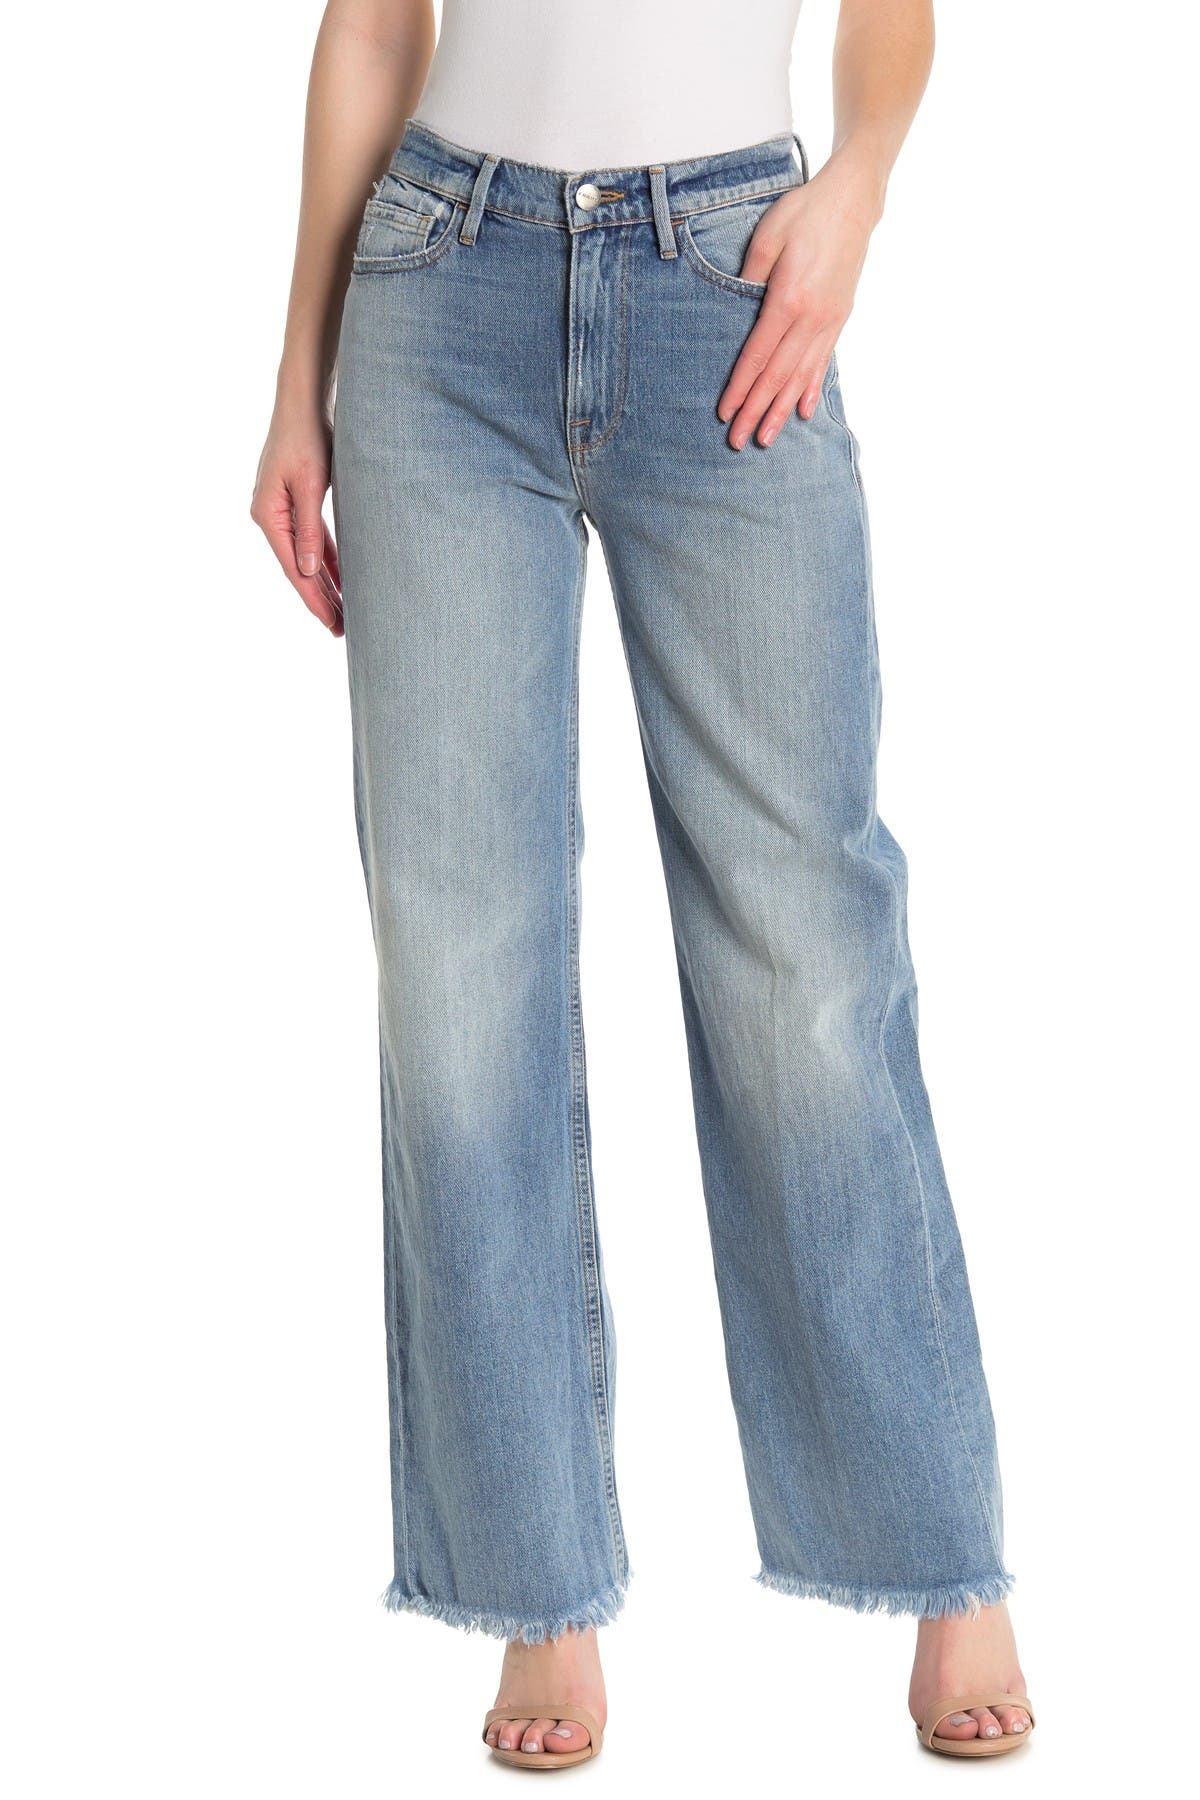 nordstrom rack frame jeans